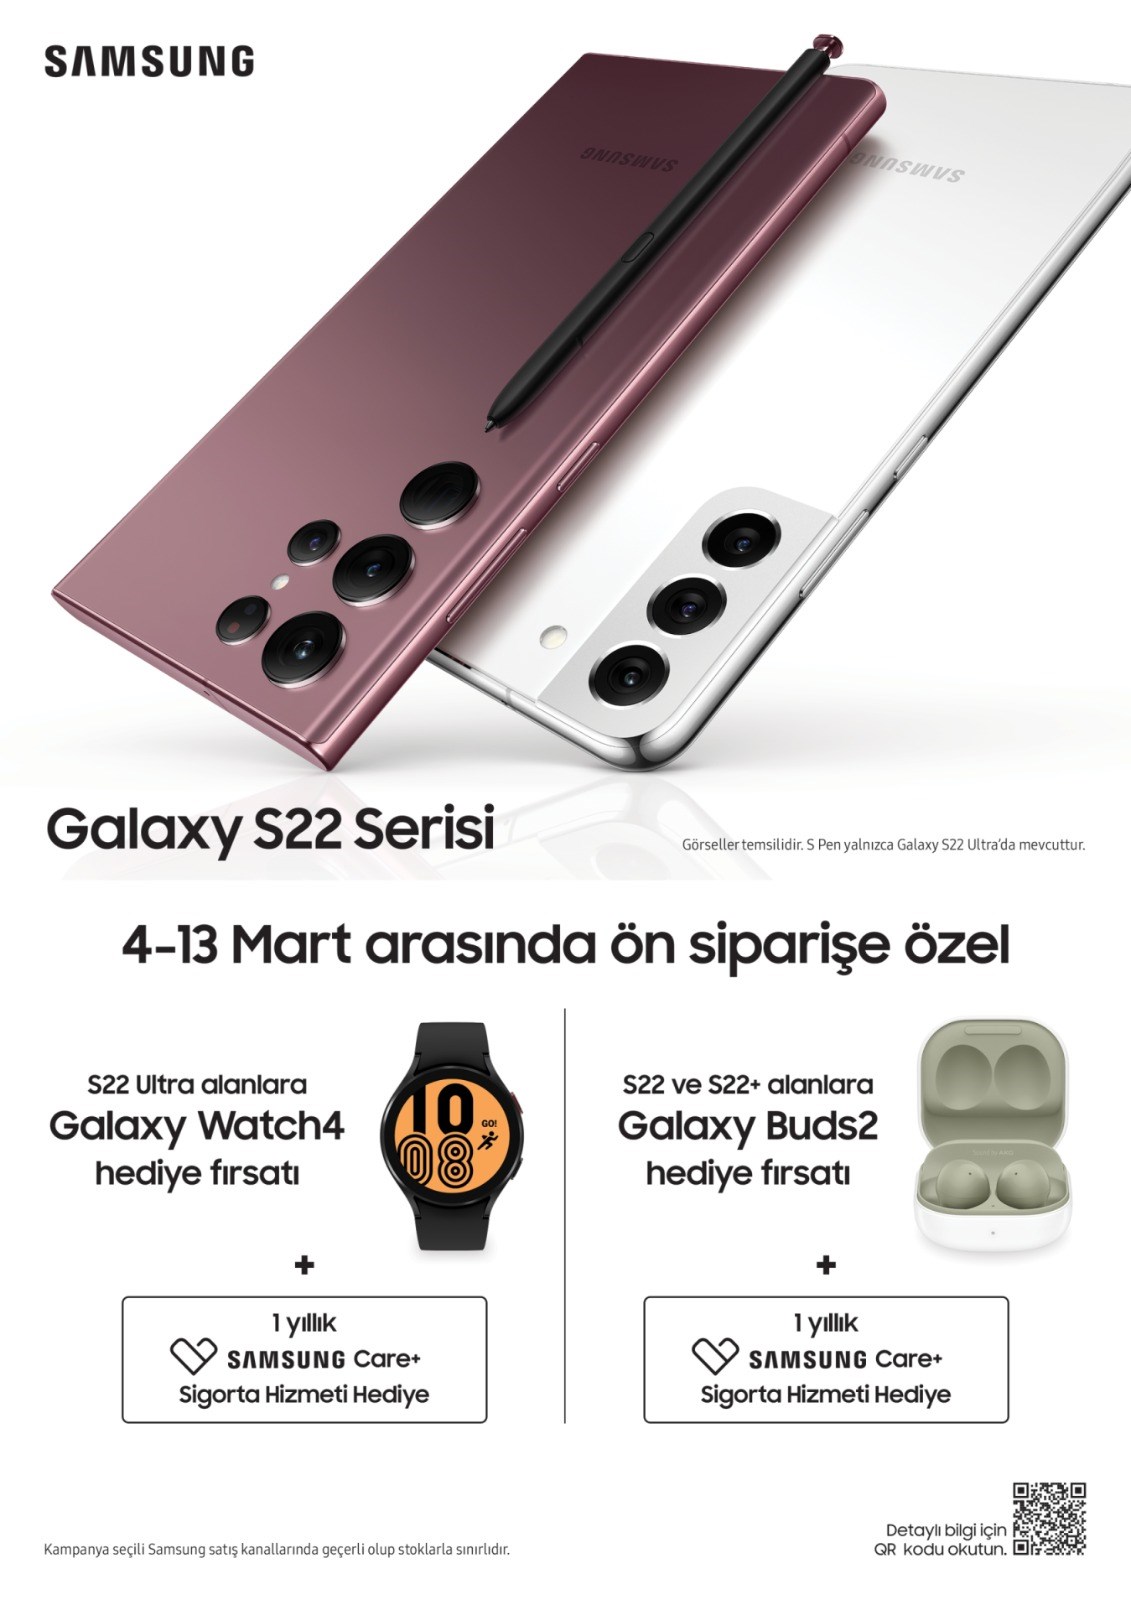 Samsung Galaxy S22|S22 Plus|S22 Ultra Türkiye fiyatı ne kadar?